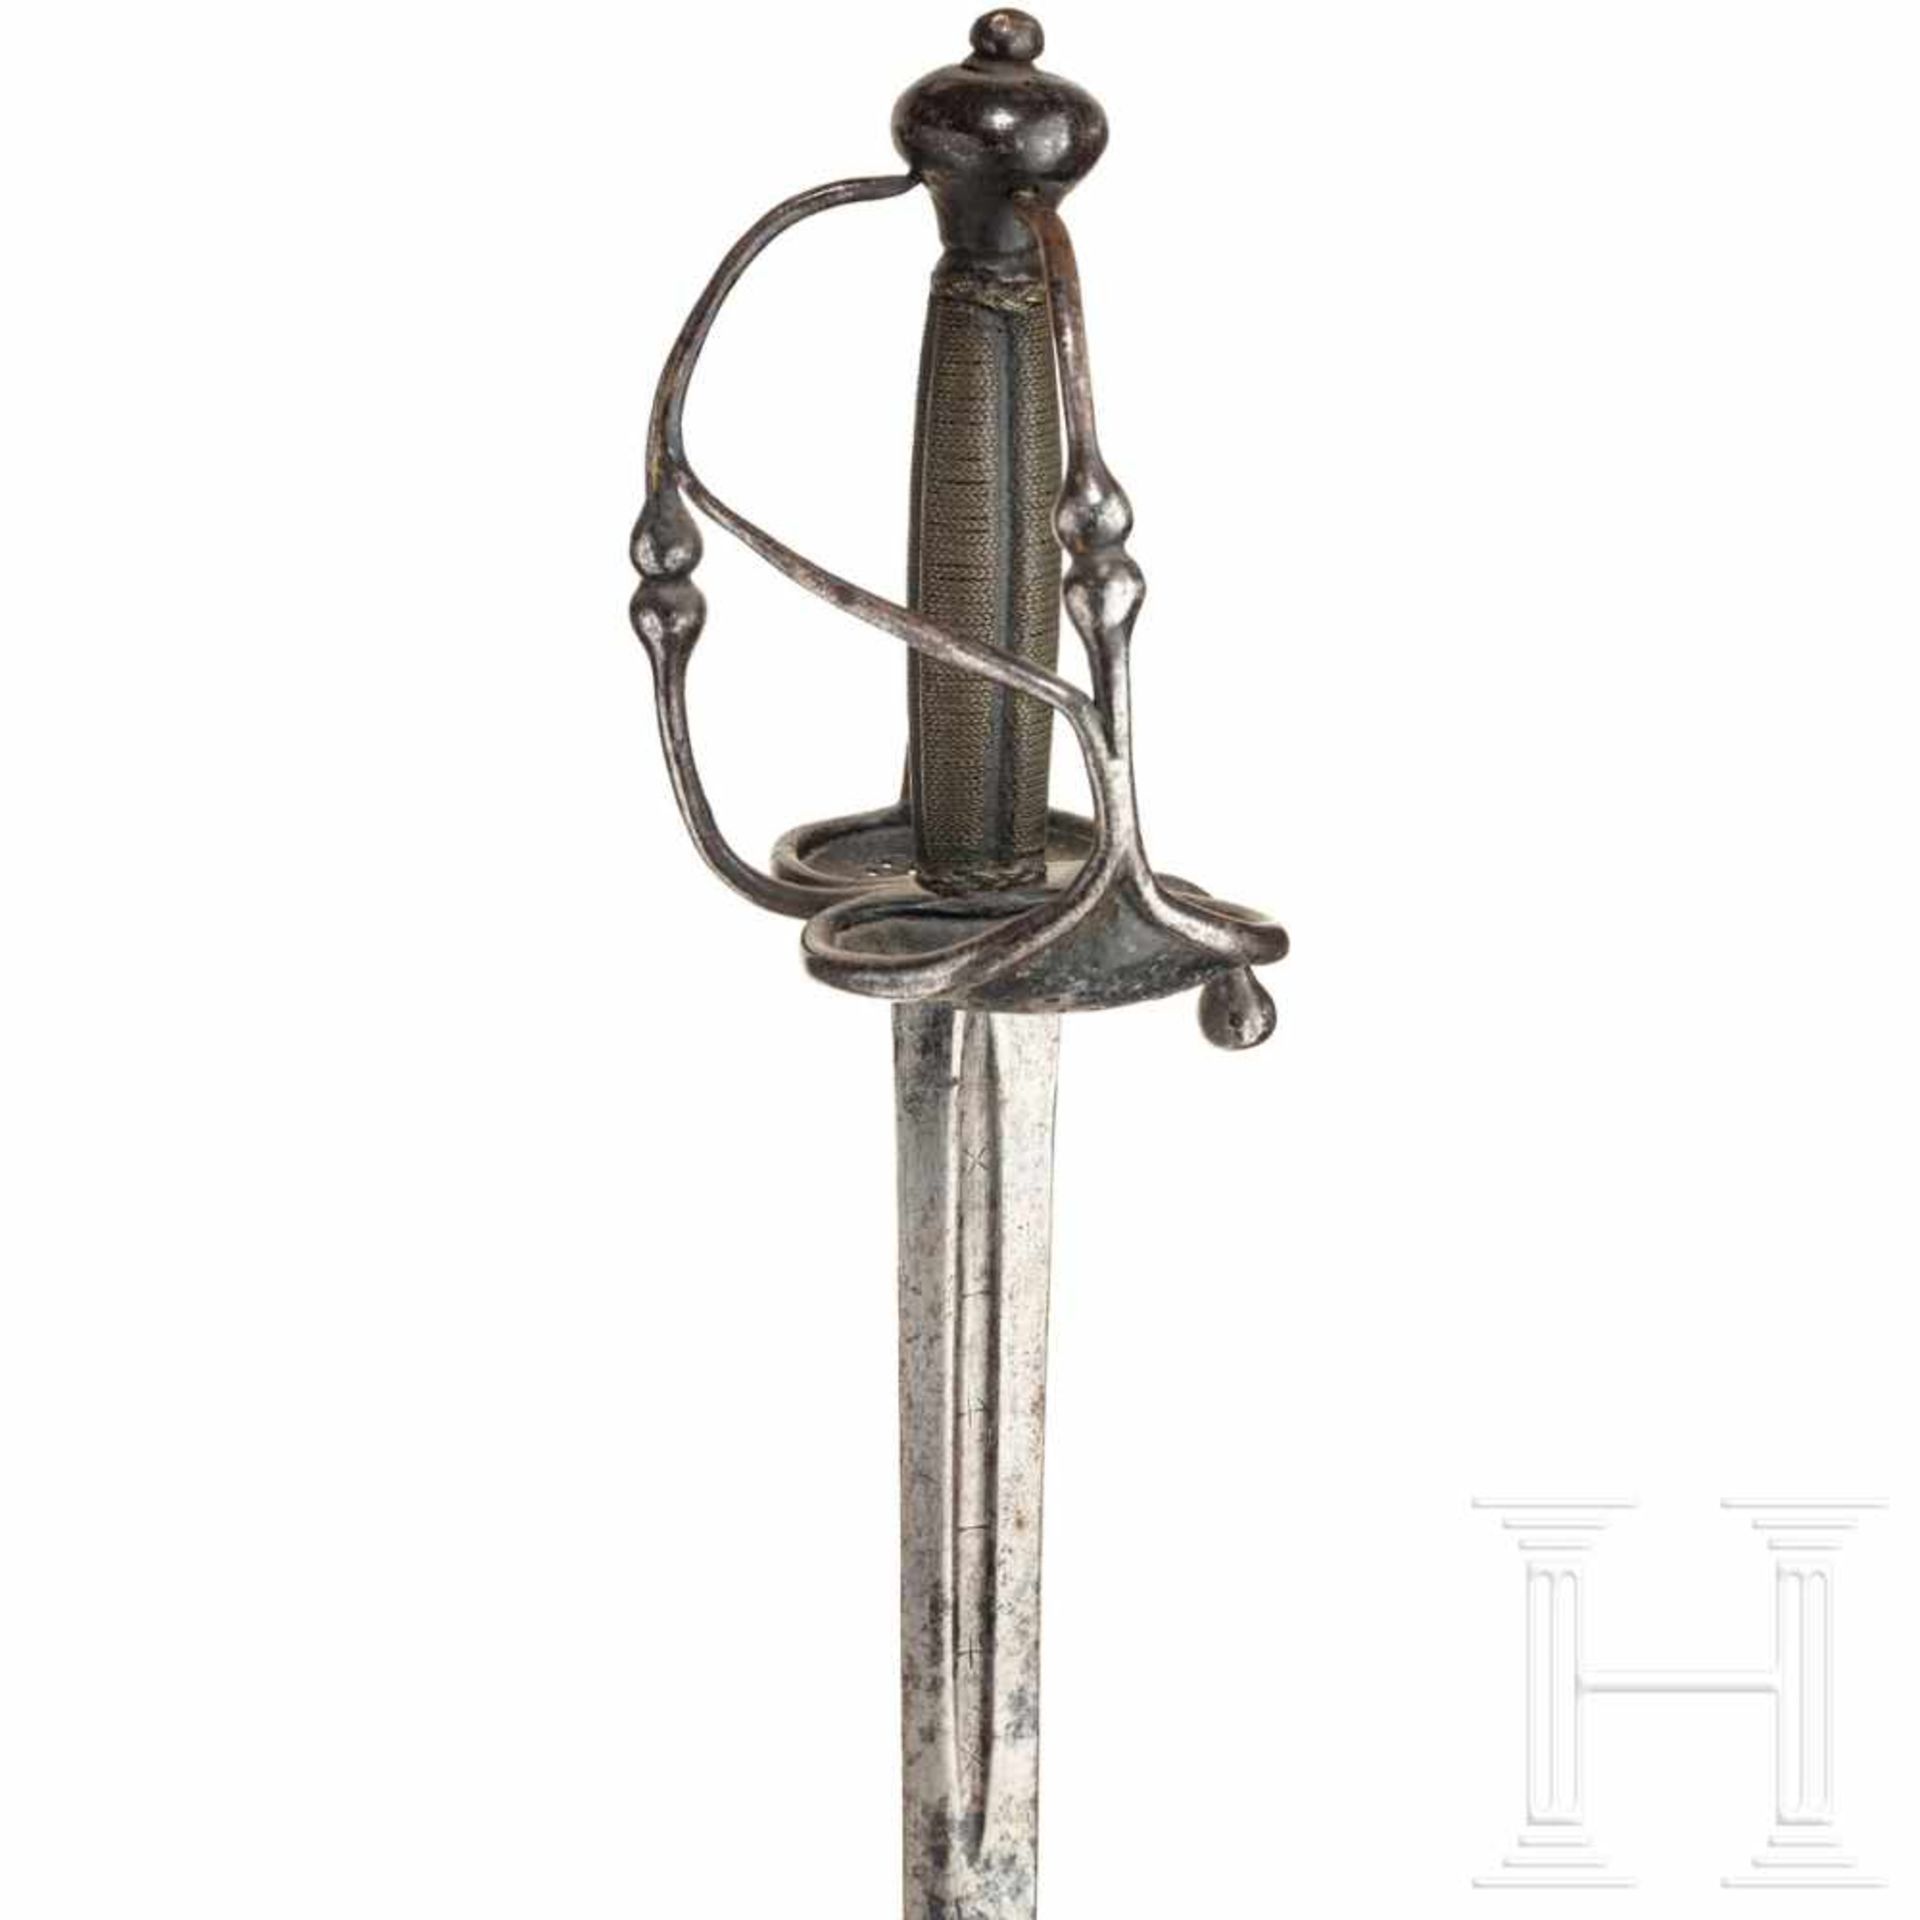 A German campaign sword, circa 1650Schlanke zweischneidige Klinge mit kurzen Hohlkehlen, darin - Bild 3 aus 3